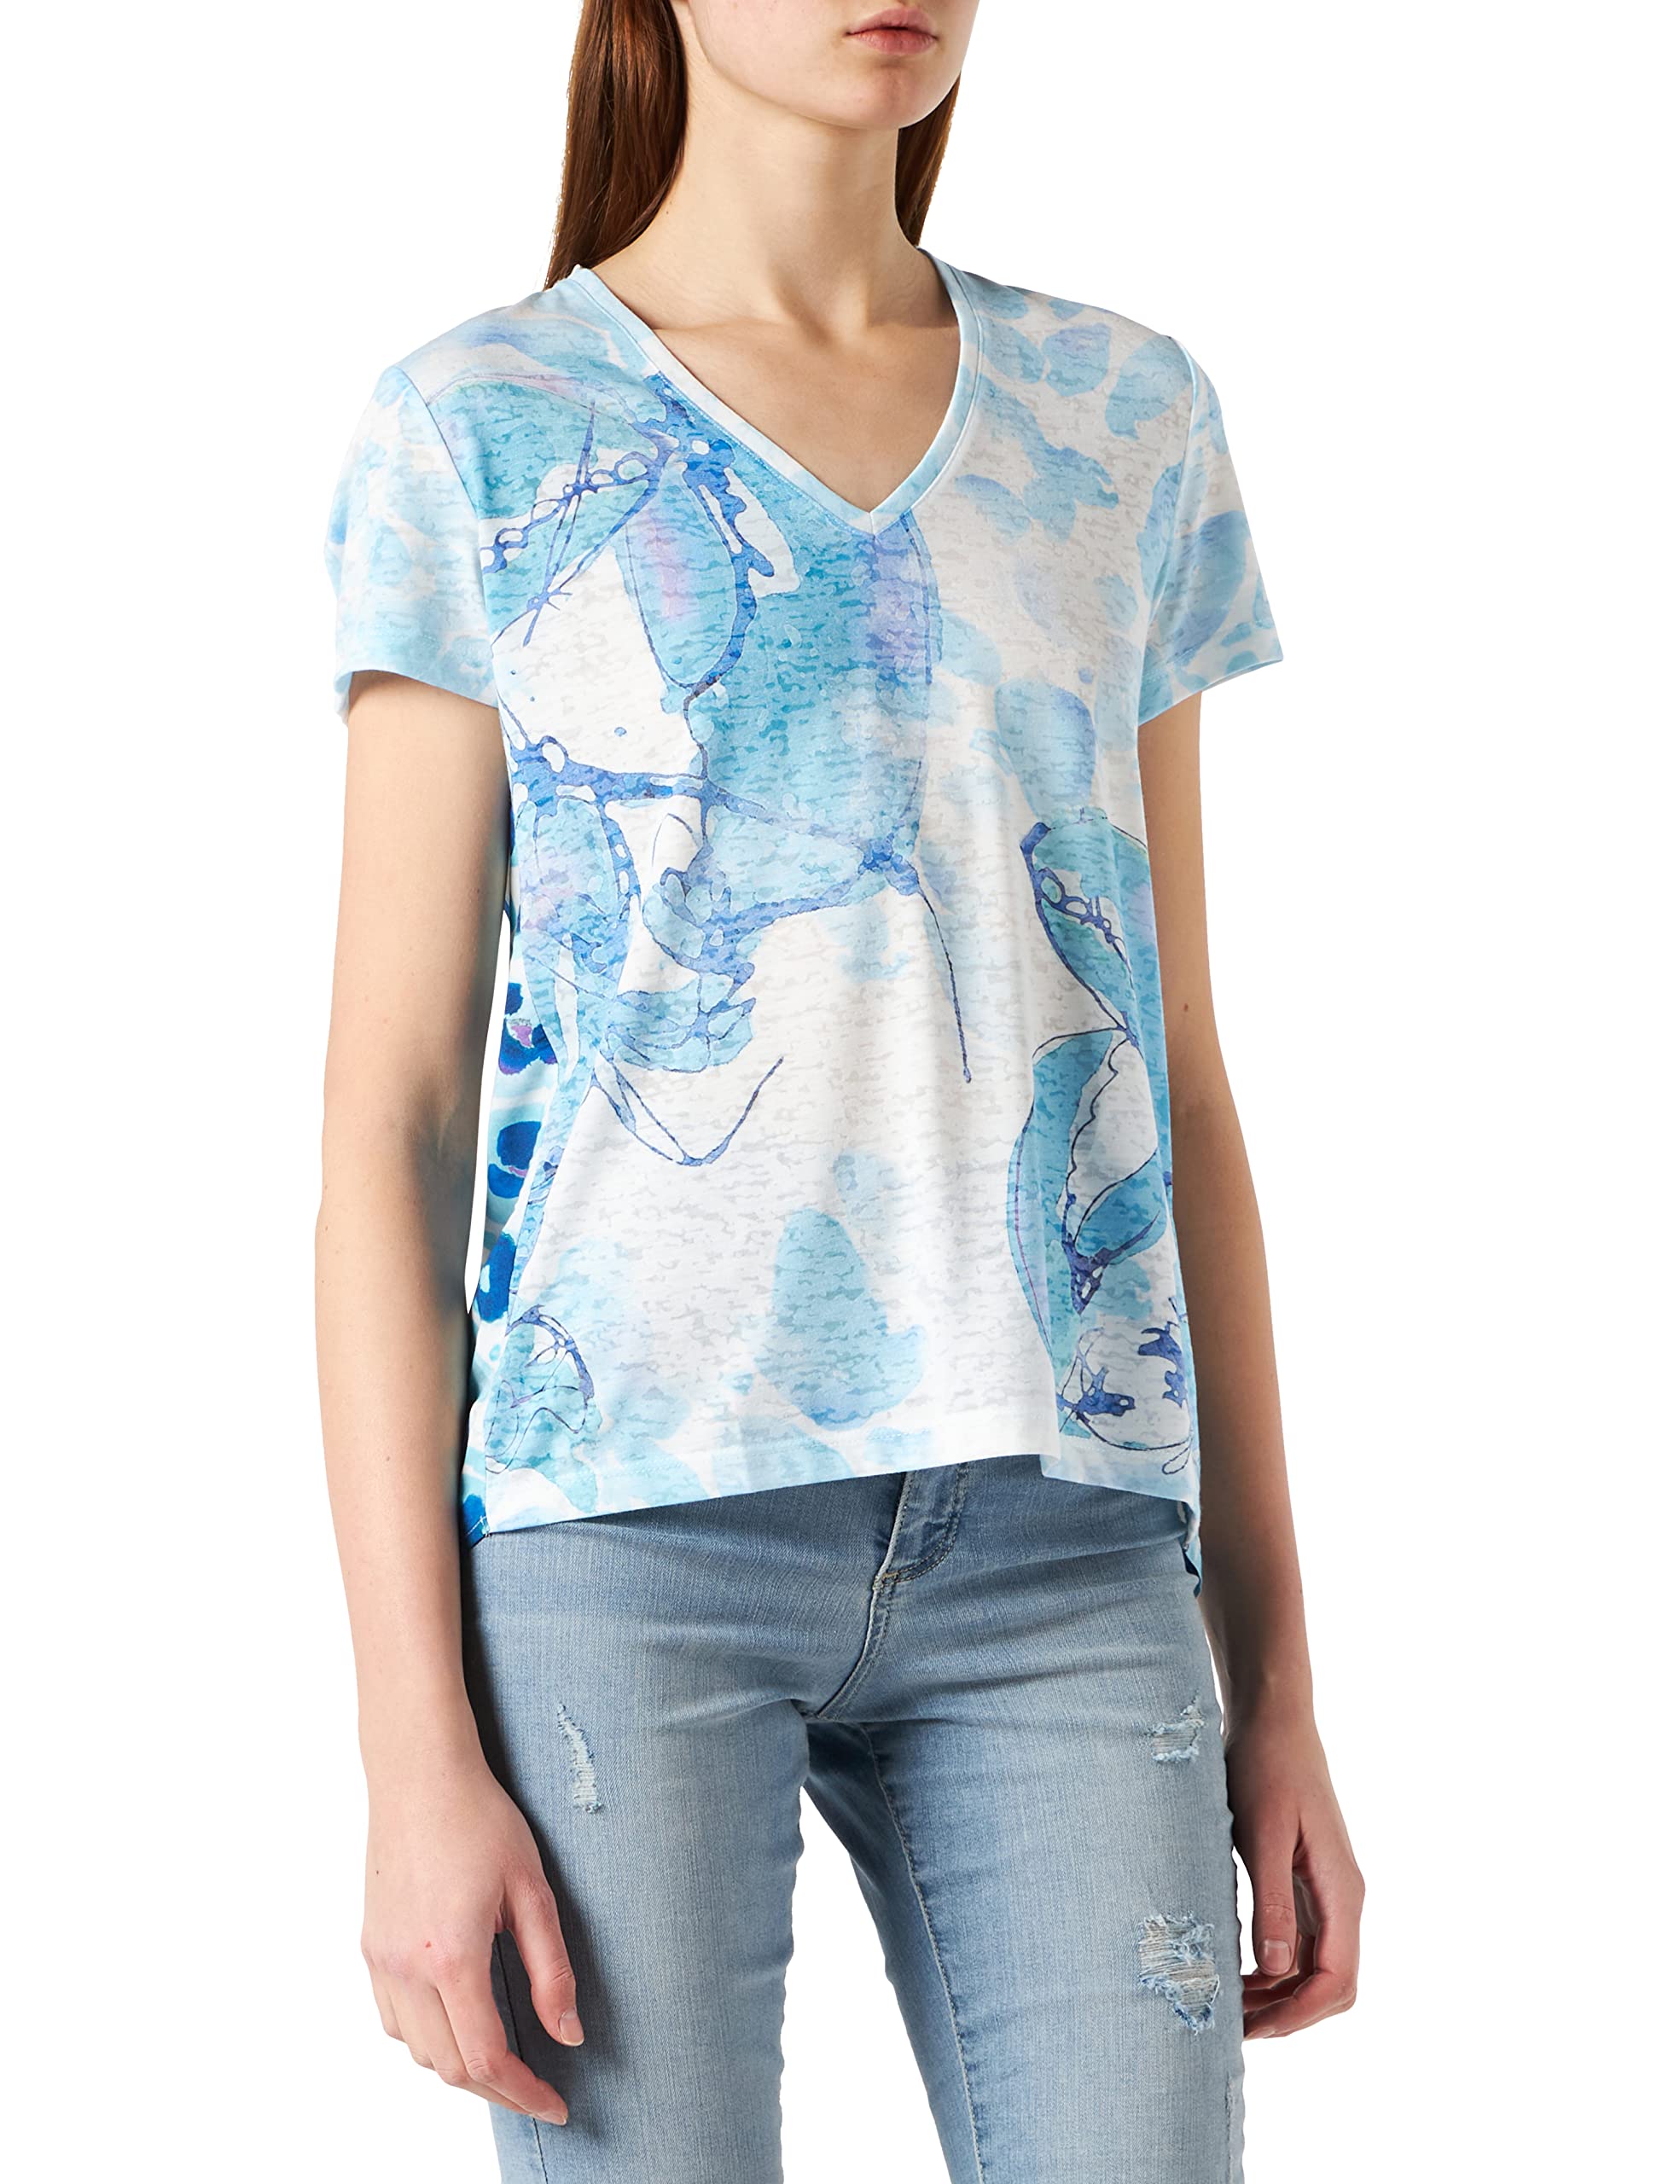 Taifun Damen T-Shirt mit Ausbrenner-Effekt Kurzarm T-Shirt Kurzarm Rundhals Gemustert Blue Curacao Gemustert 38